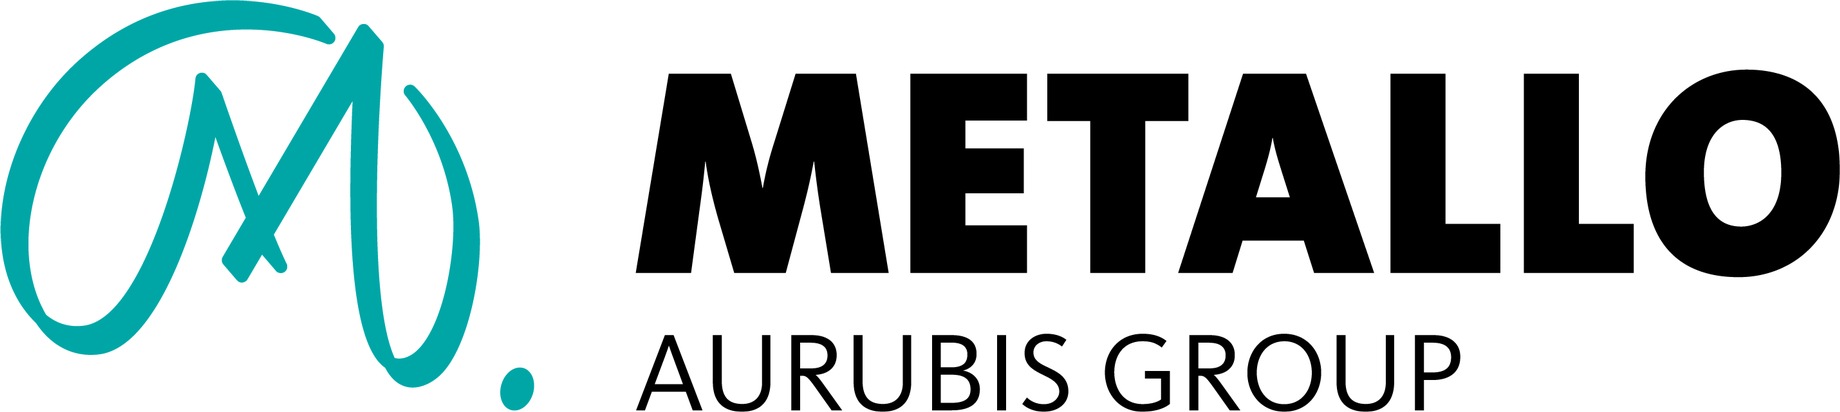 Pressemitteilung: Aurubis AG: Erwerb der Metallo-Gruppe vollständig abgeschlossen